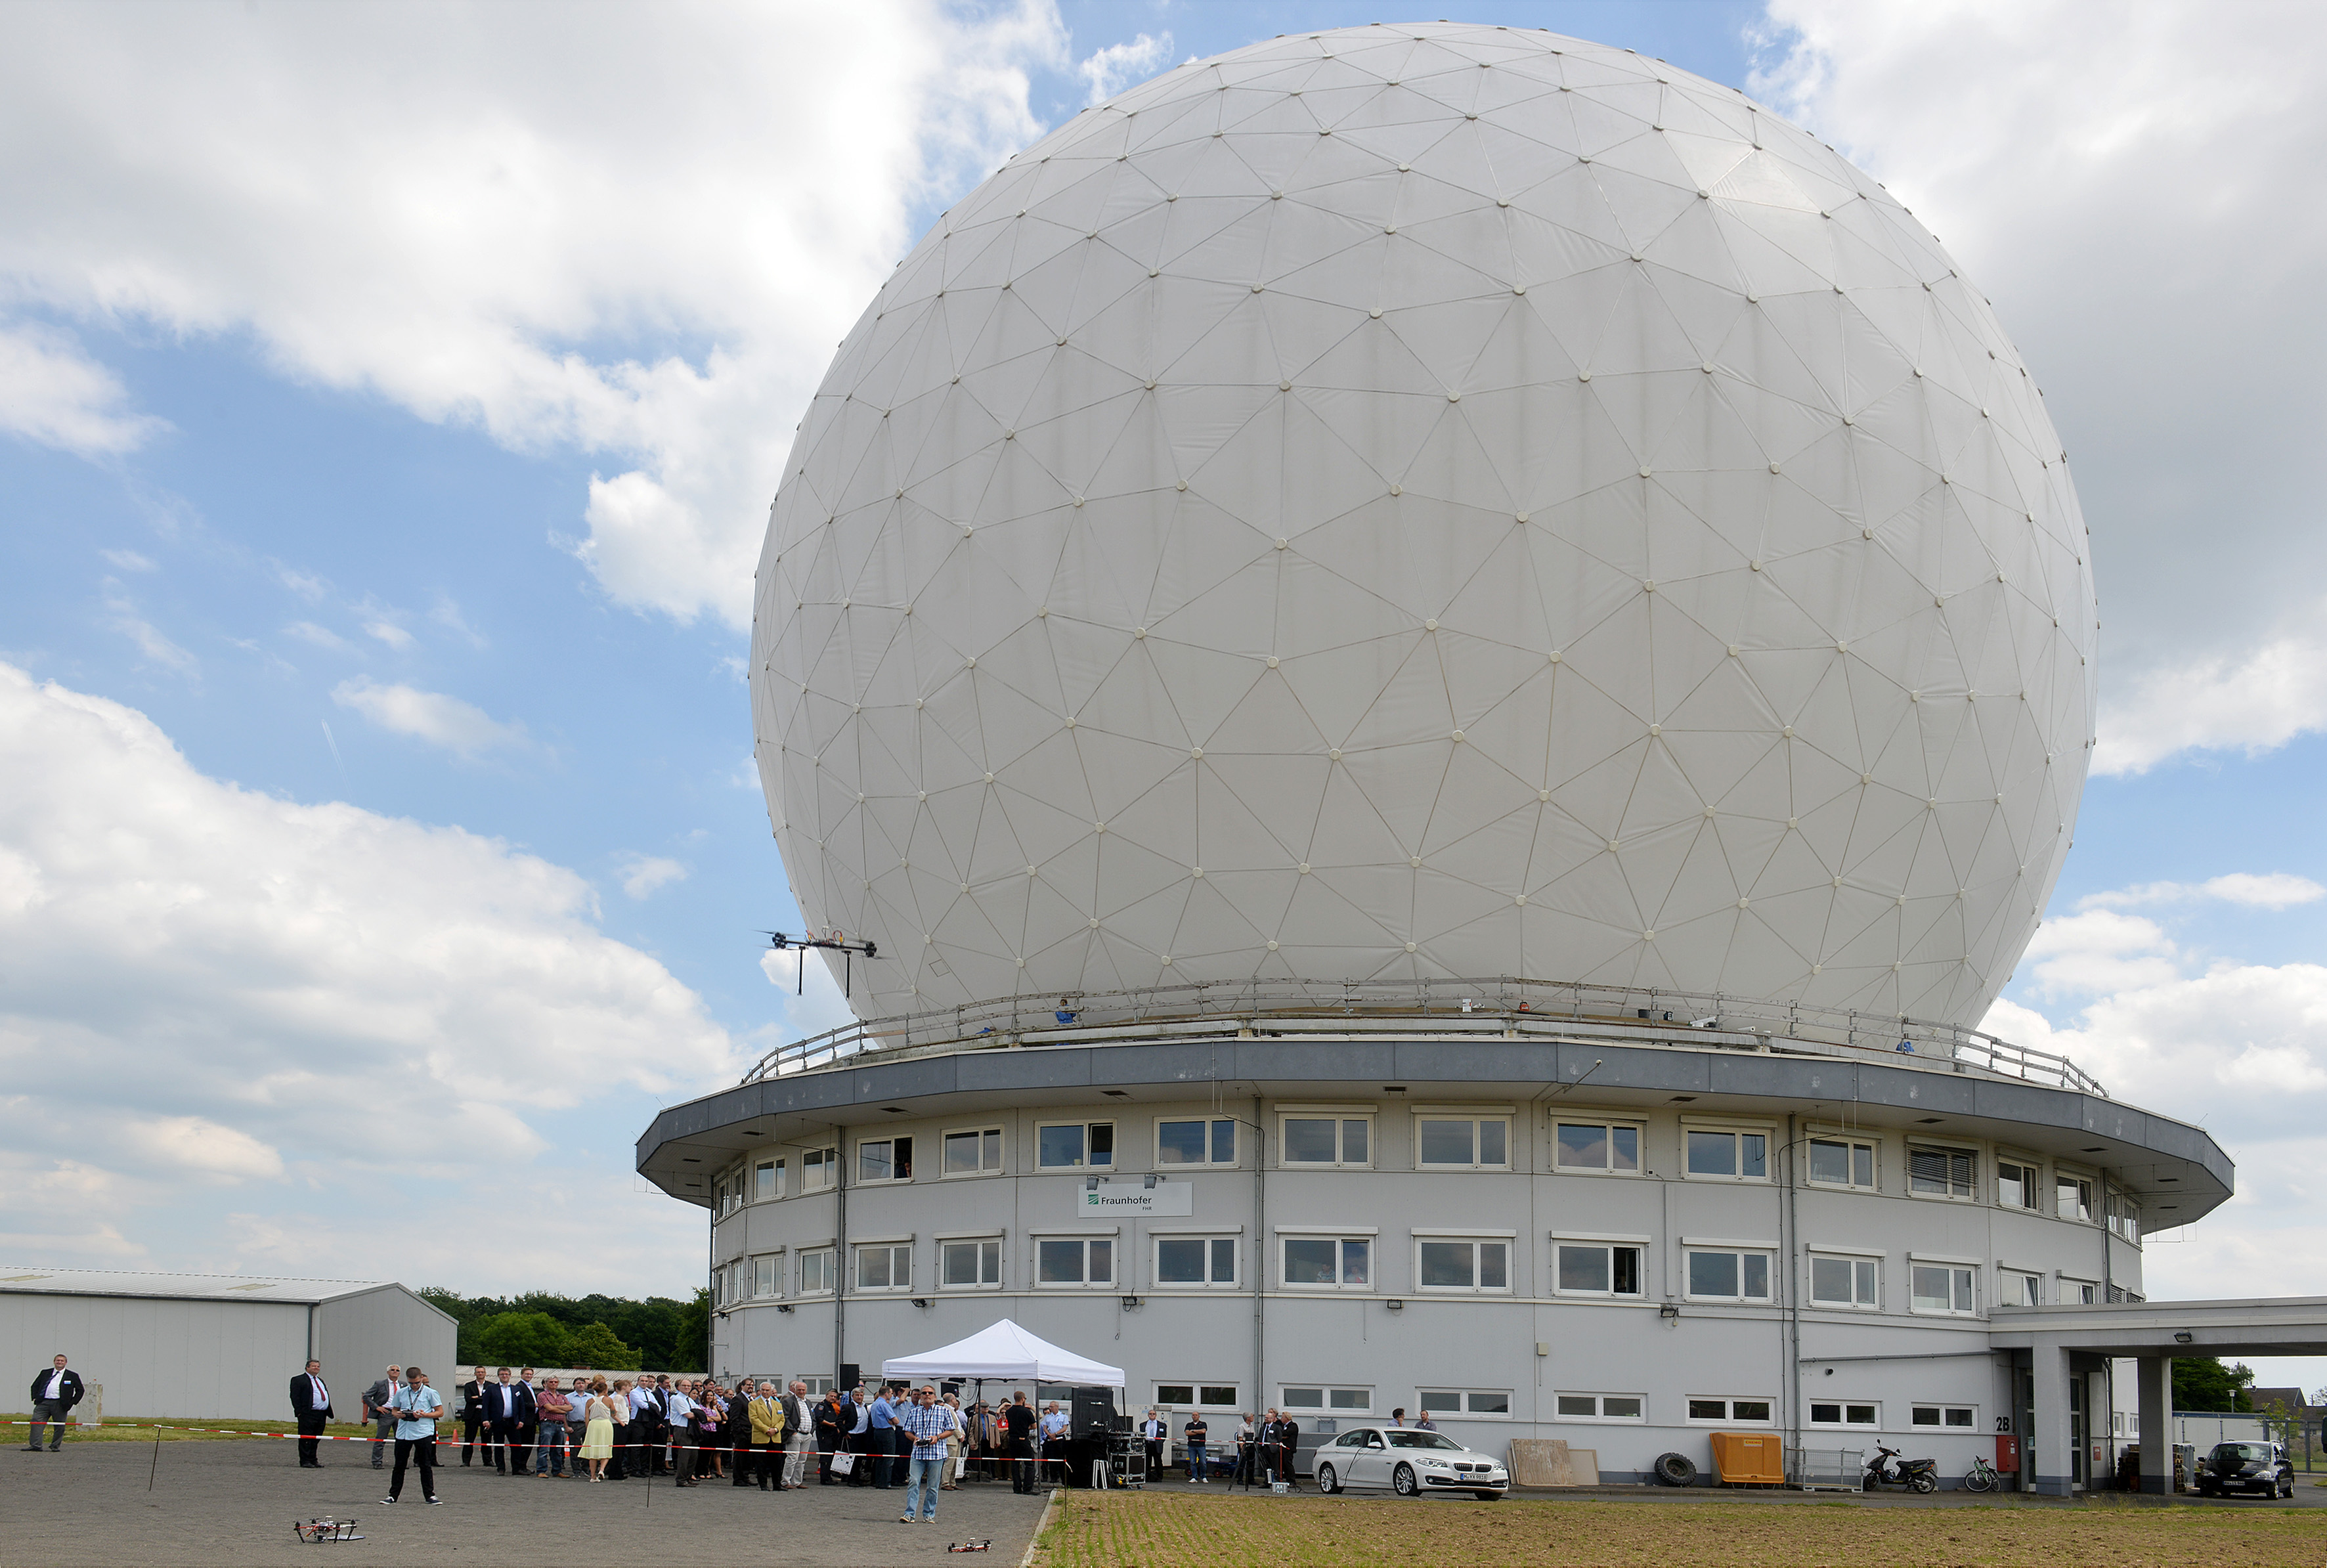 Das Weltraumüberwachungsradar TIRA (Tracking and Imaging Radar) wird vom Fraunhofer-Instituts für Hochfrequenzphysik und Radartechnik (FHR) am Standort Wachtberg bei Bonn betrieben.